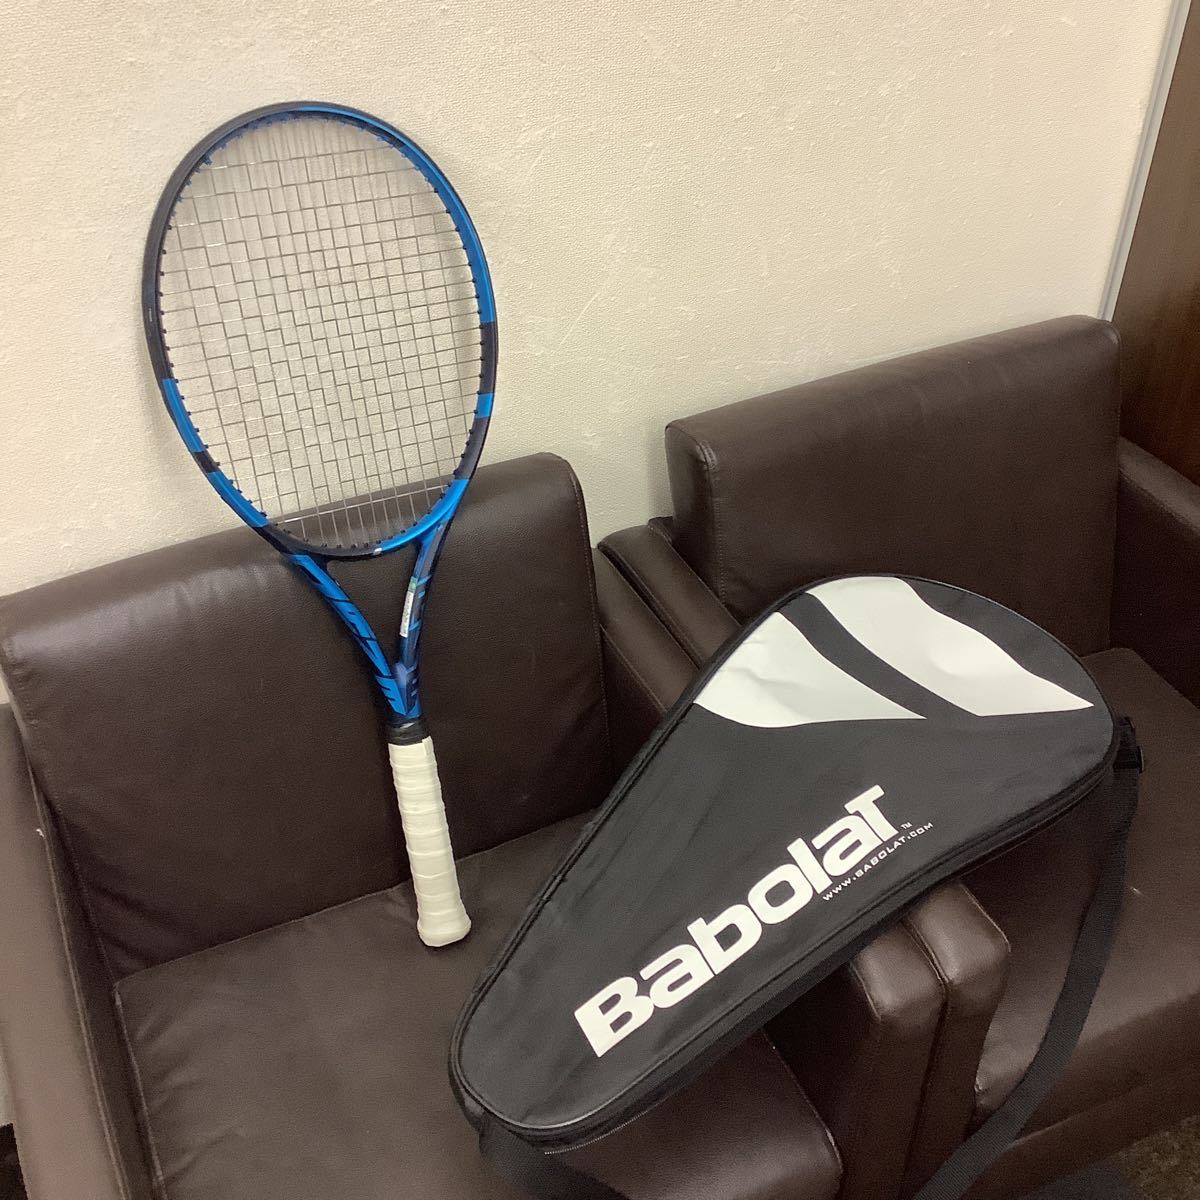 Babolat バボラ ピュアドライブ 2021 G2 テニスラケット 美品 ic.sch.id